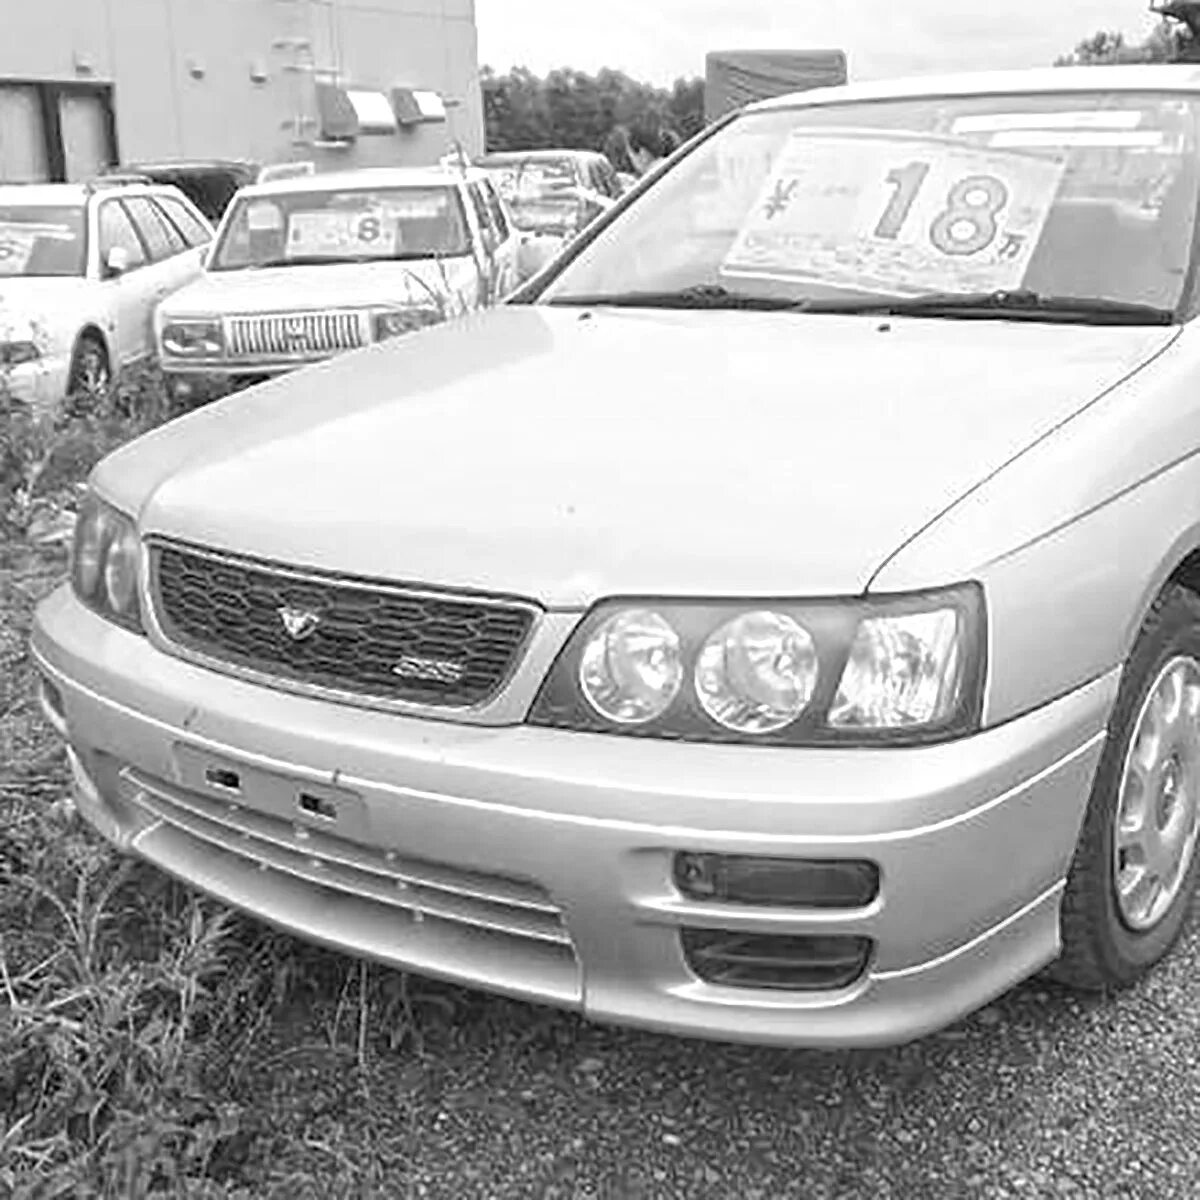 Nissan Bluebird 96. Ниссан Блюберд eu14 1998г. Бампер Nissan Bluebird SSS. Nissan Bluebird hu14 1999.